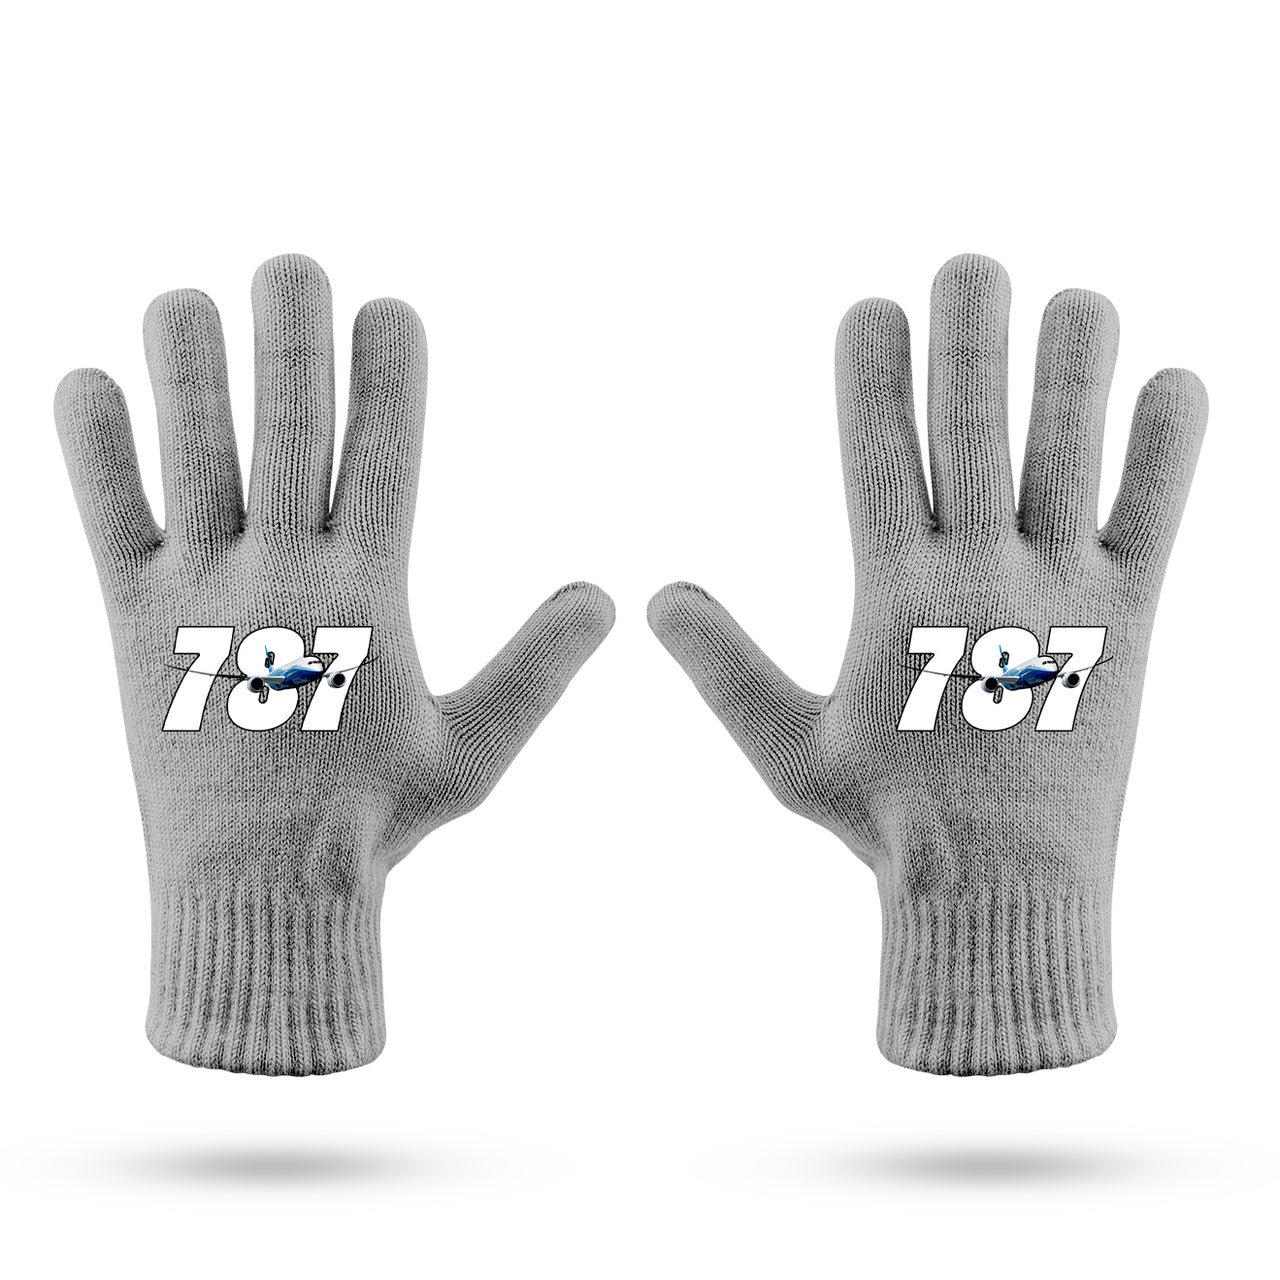 Super Boeing 787 Designed Gloves